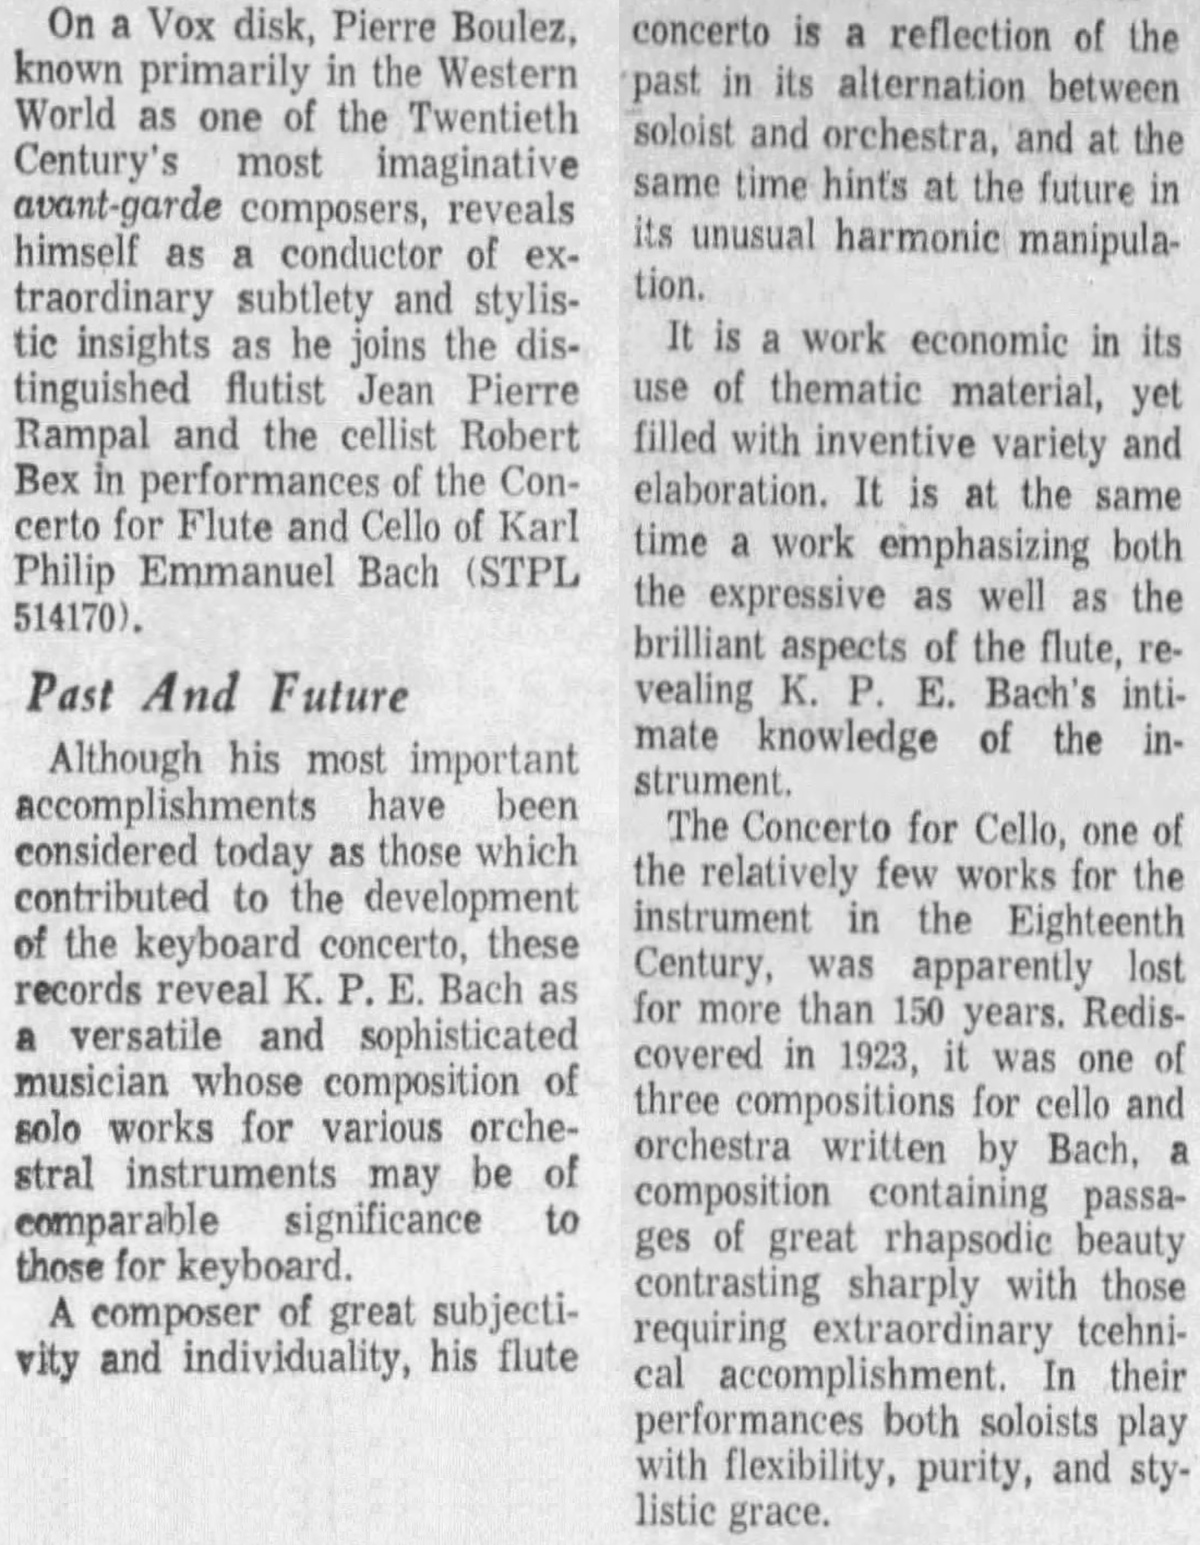 Cité de la chronique de Florestan Croche, quotidien «The Baltimore Sun» du 11 avril 1965, page 111